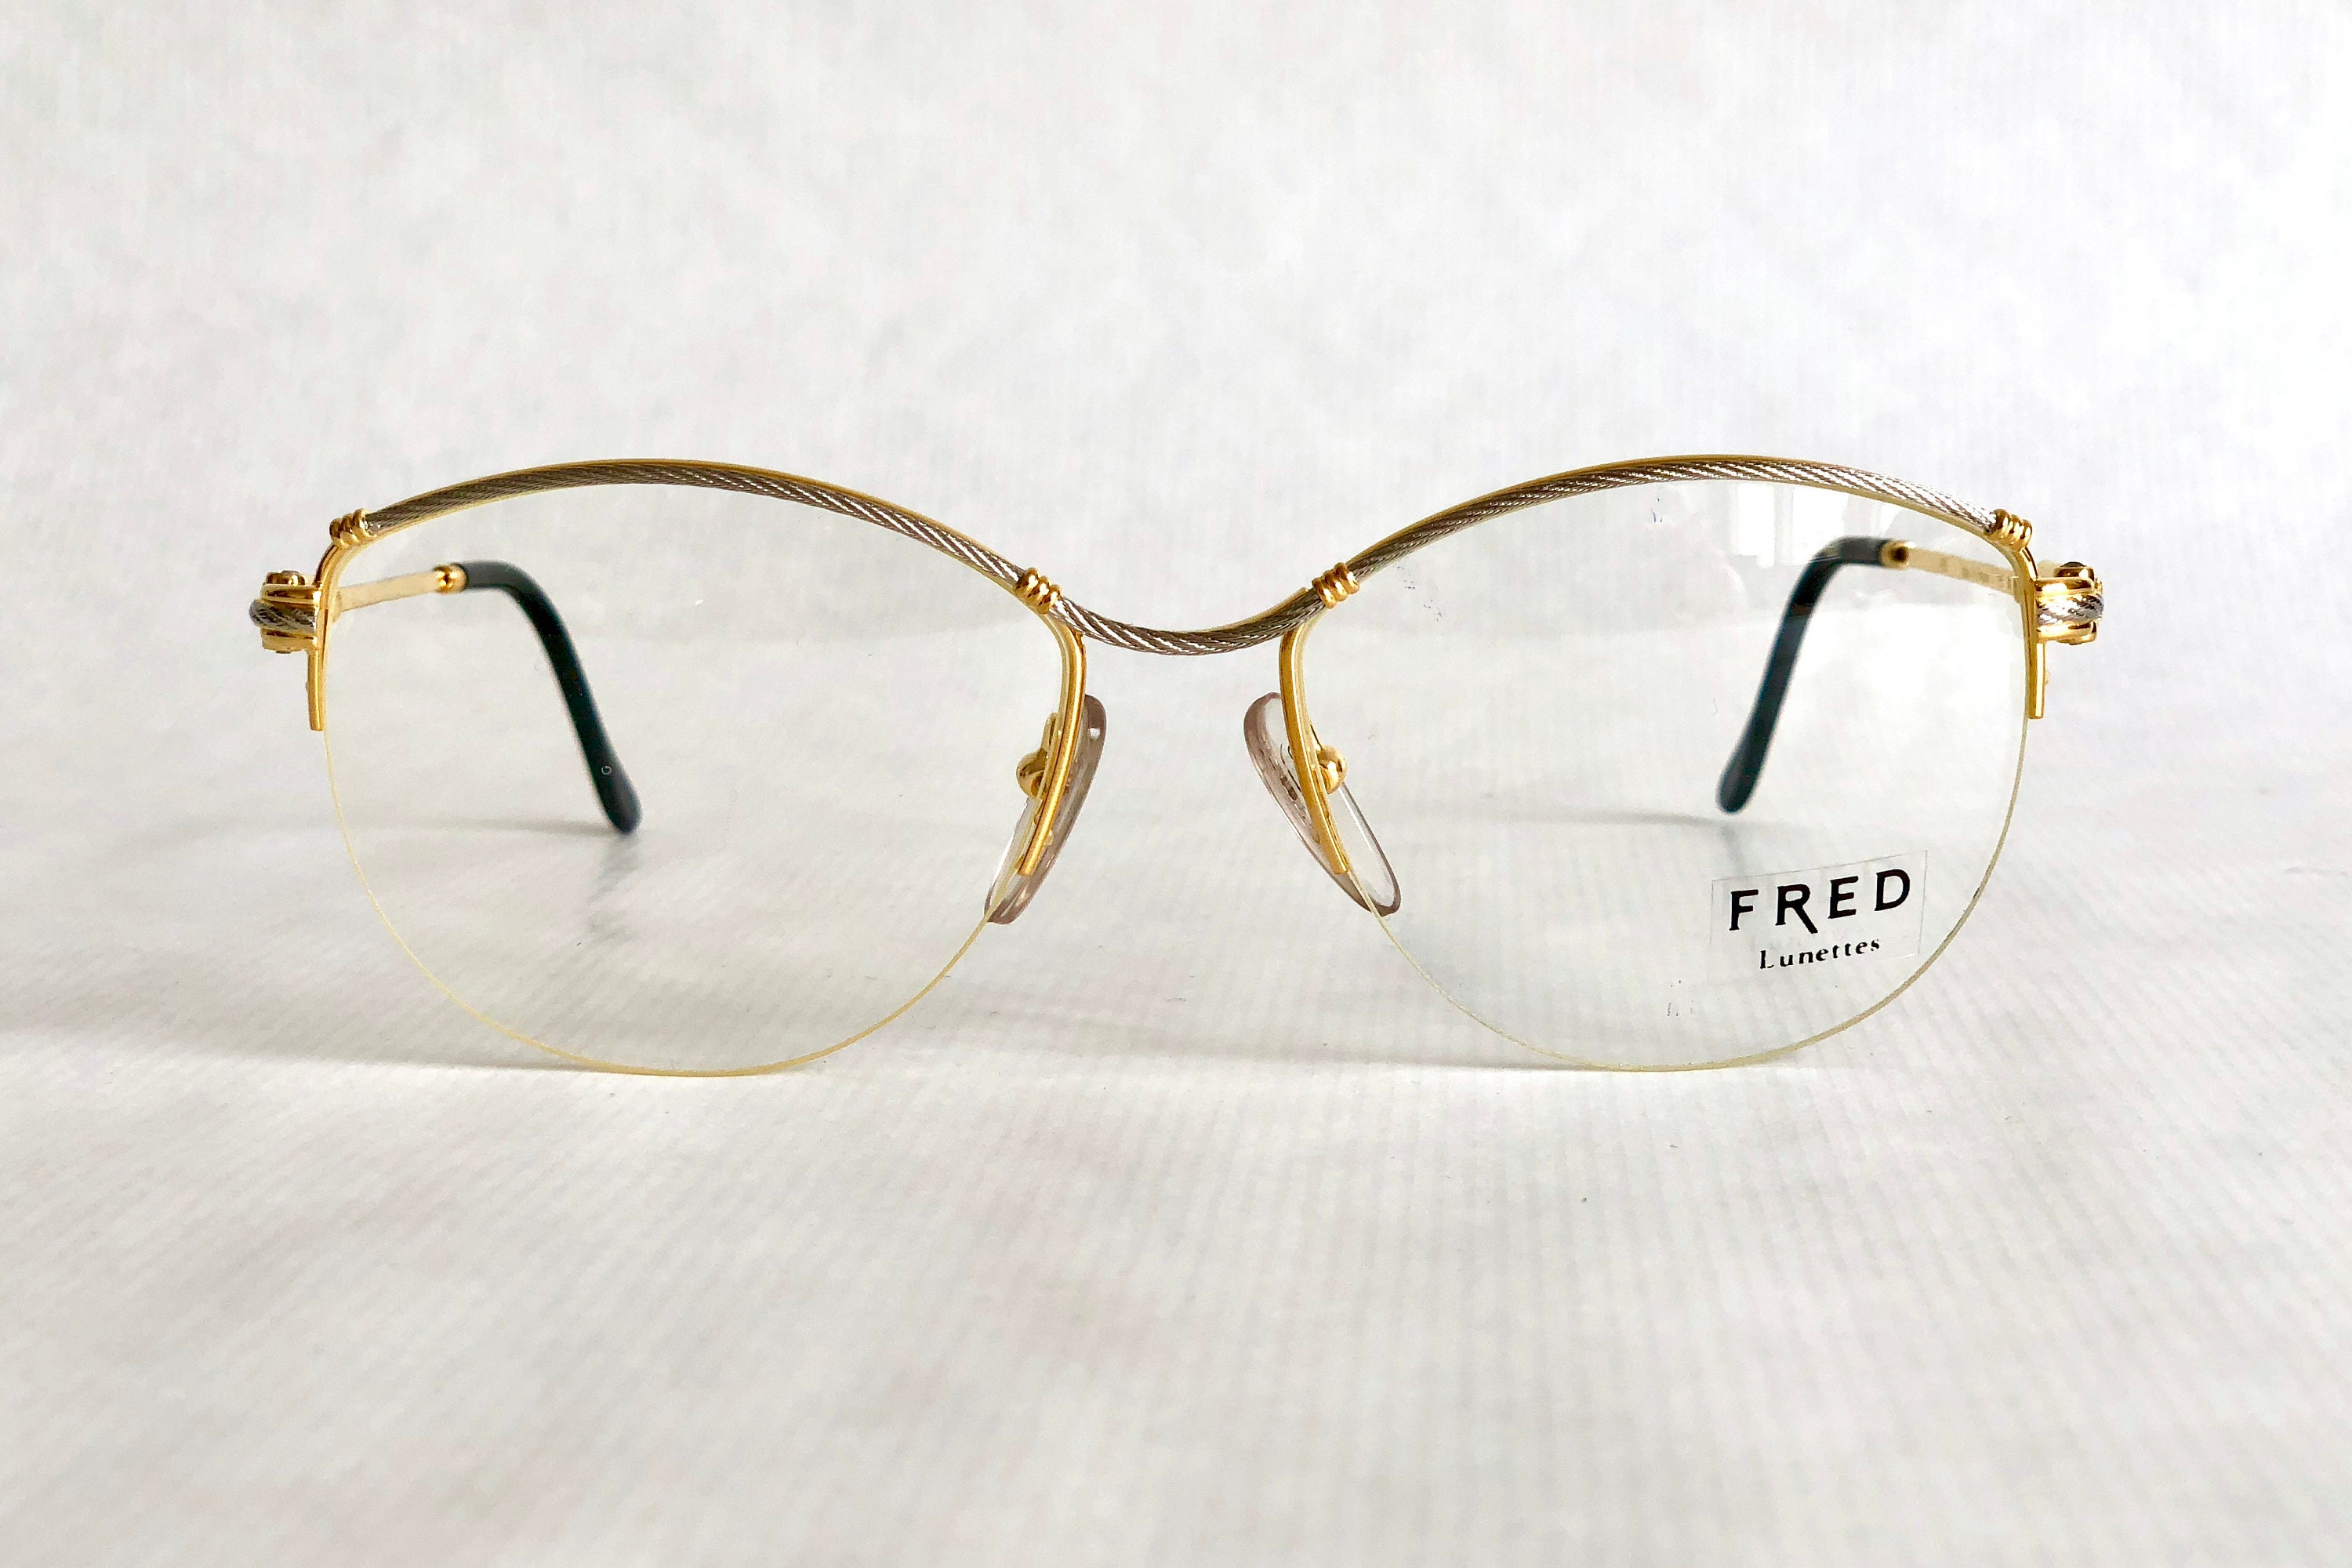 Fred Force 10 Bermude 22Kt Gold Vintage Eyeglasses Made in France ...